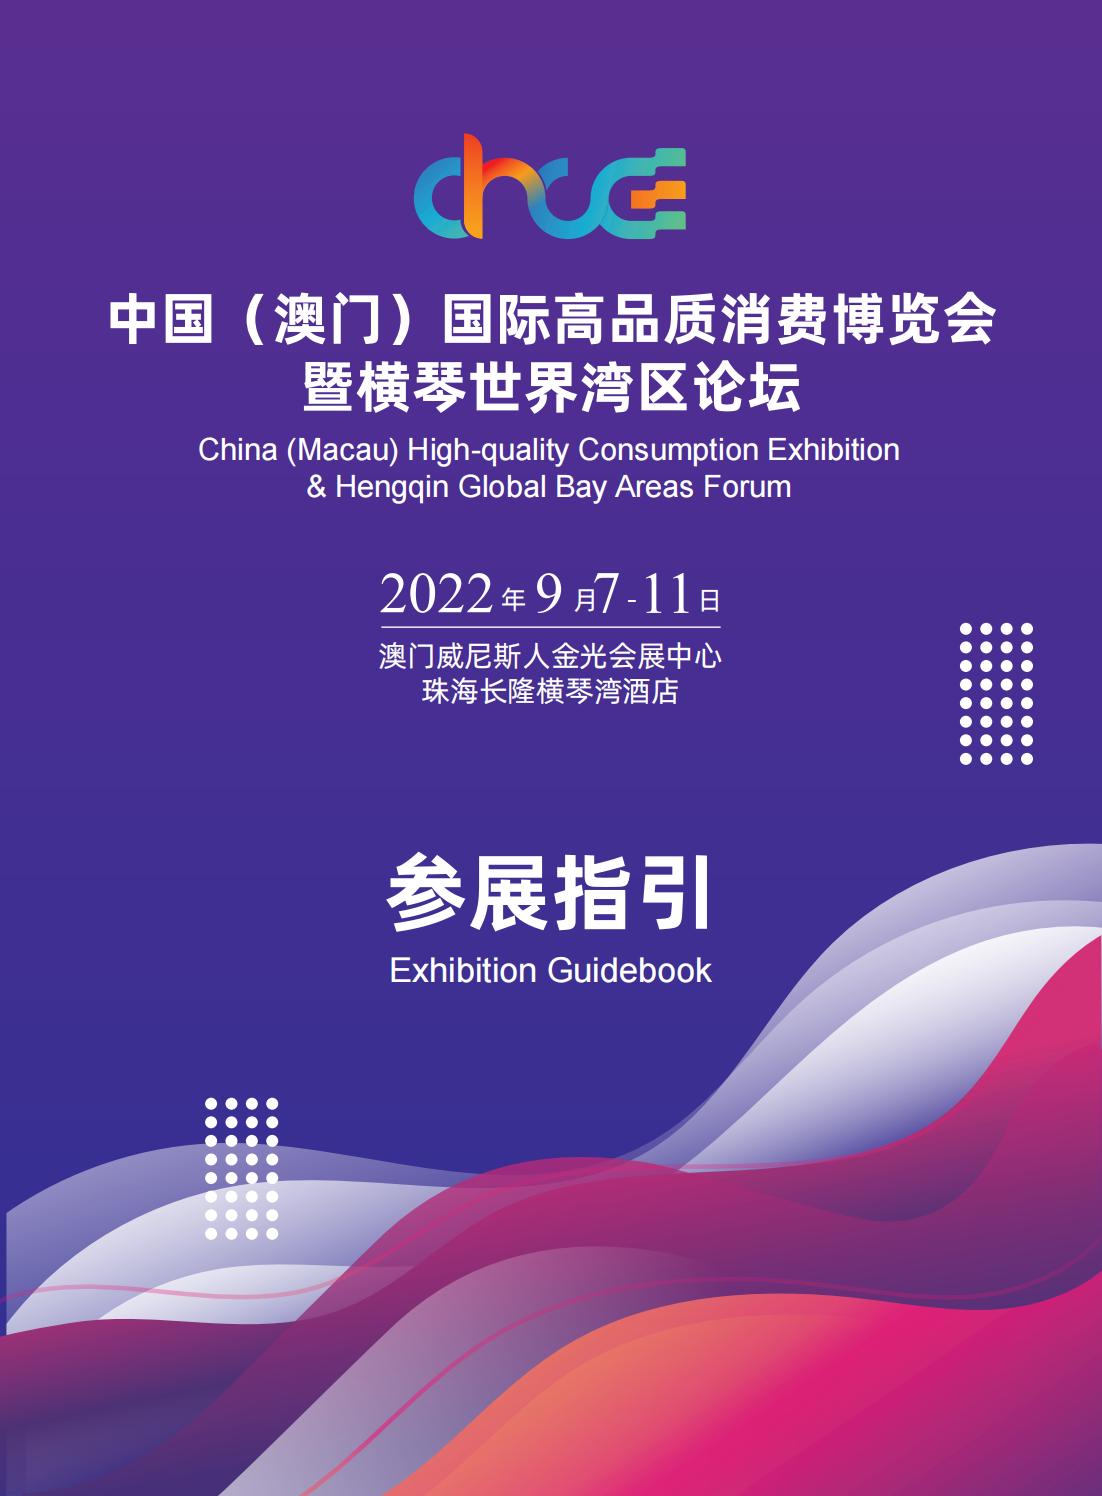 中国（澳门）国际高品质消费博览会暨横琴世界湾区论坛 2022年9月7日—11日(图1)